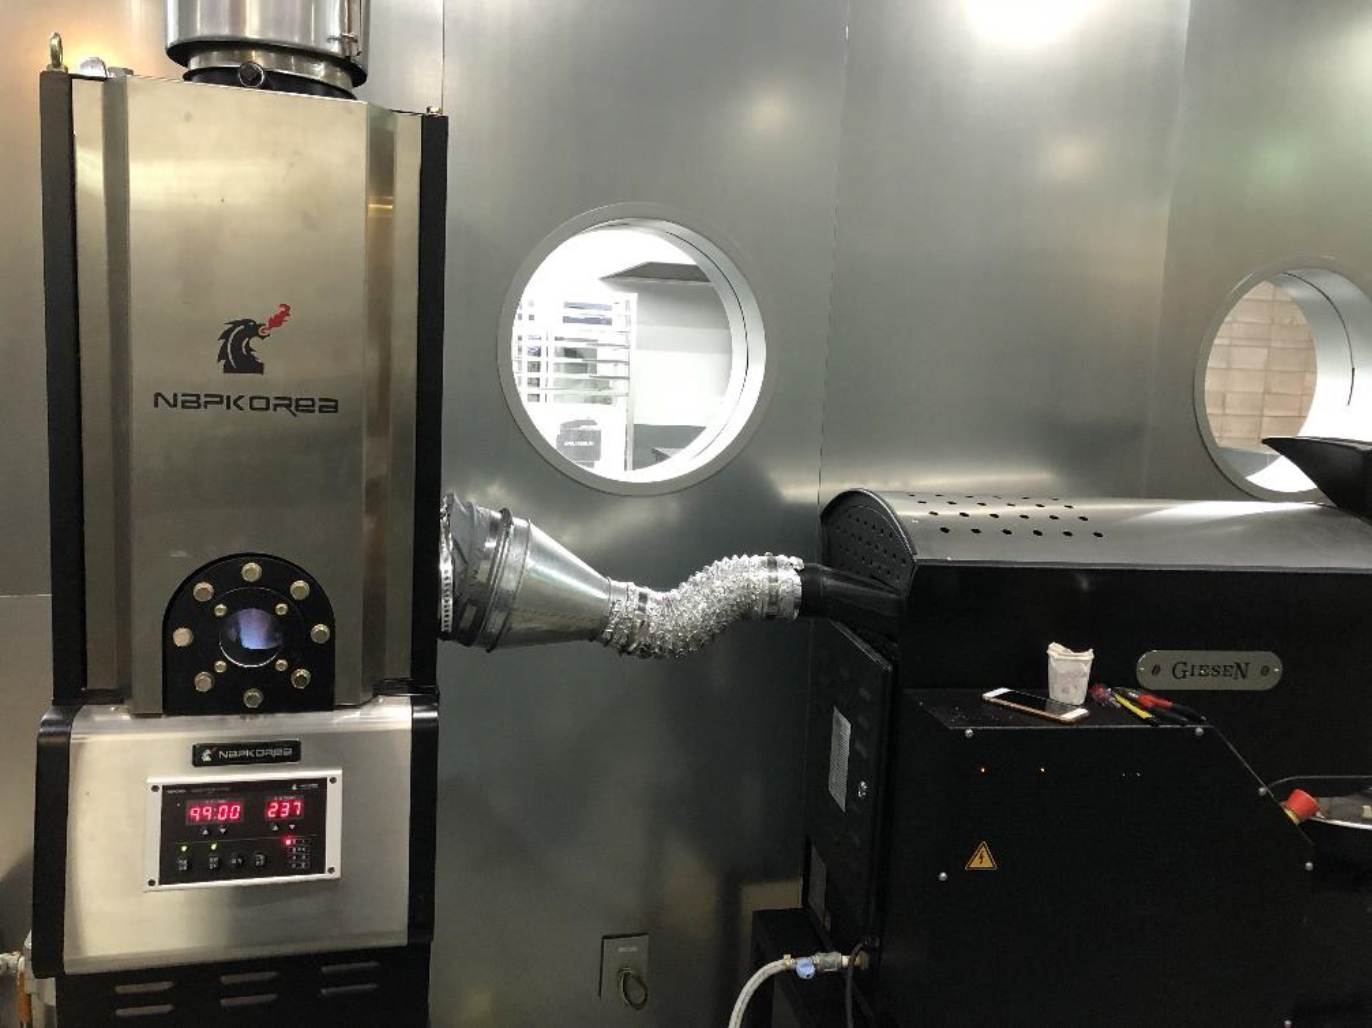 GIESEN 吉森咖啡烘焙机 除烟除味 后燃机 安装案例 - CAFE DE ANTETI咖啡工作室。